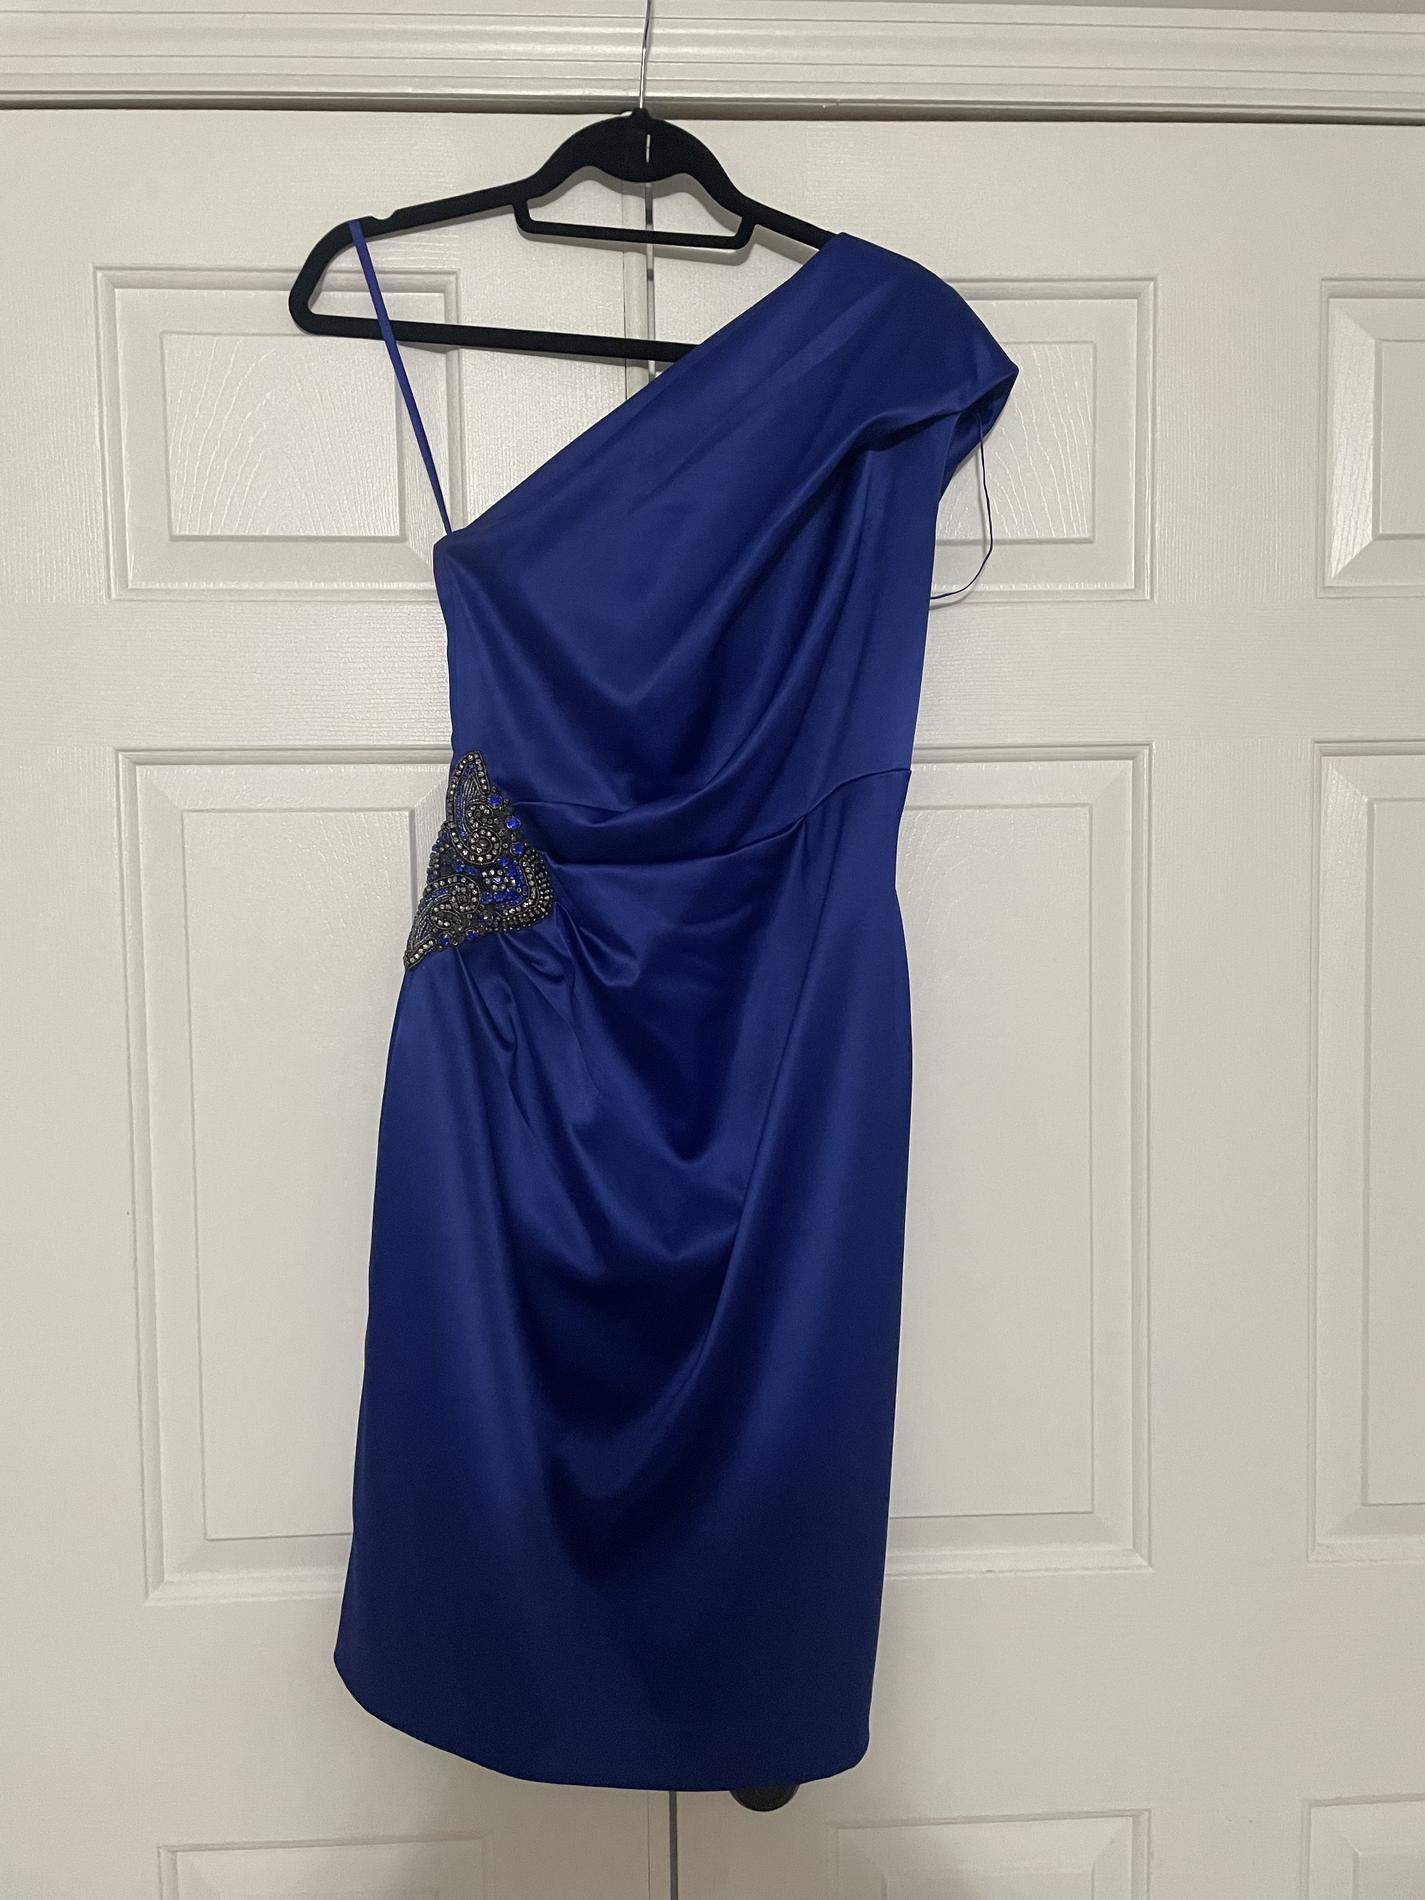 Eliza J Size 4 One Shoulder Satin Blue Cocktail Dress on Queenly